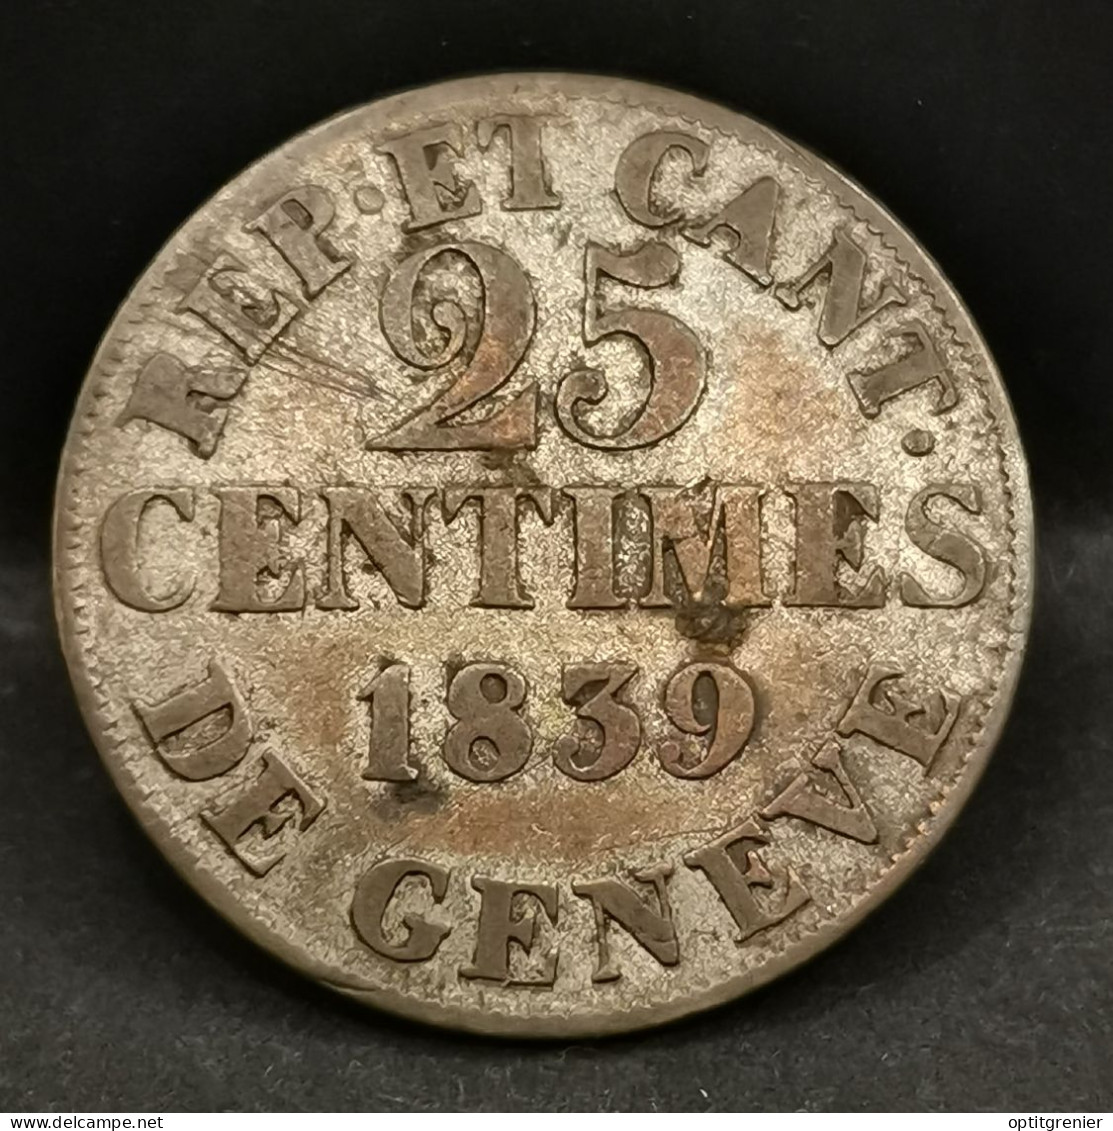 25 CENTIMES 1839 BILLON ARGENT CANTON DE GENEVE SUISSE / SWITZERLAND - Monnaies Cantonales